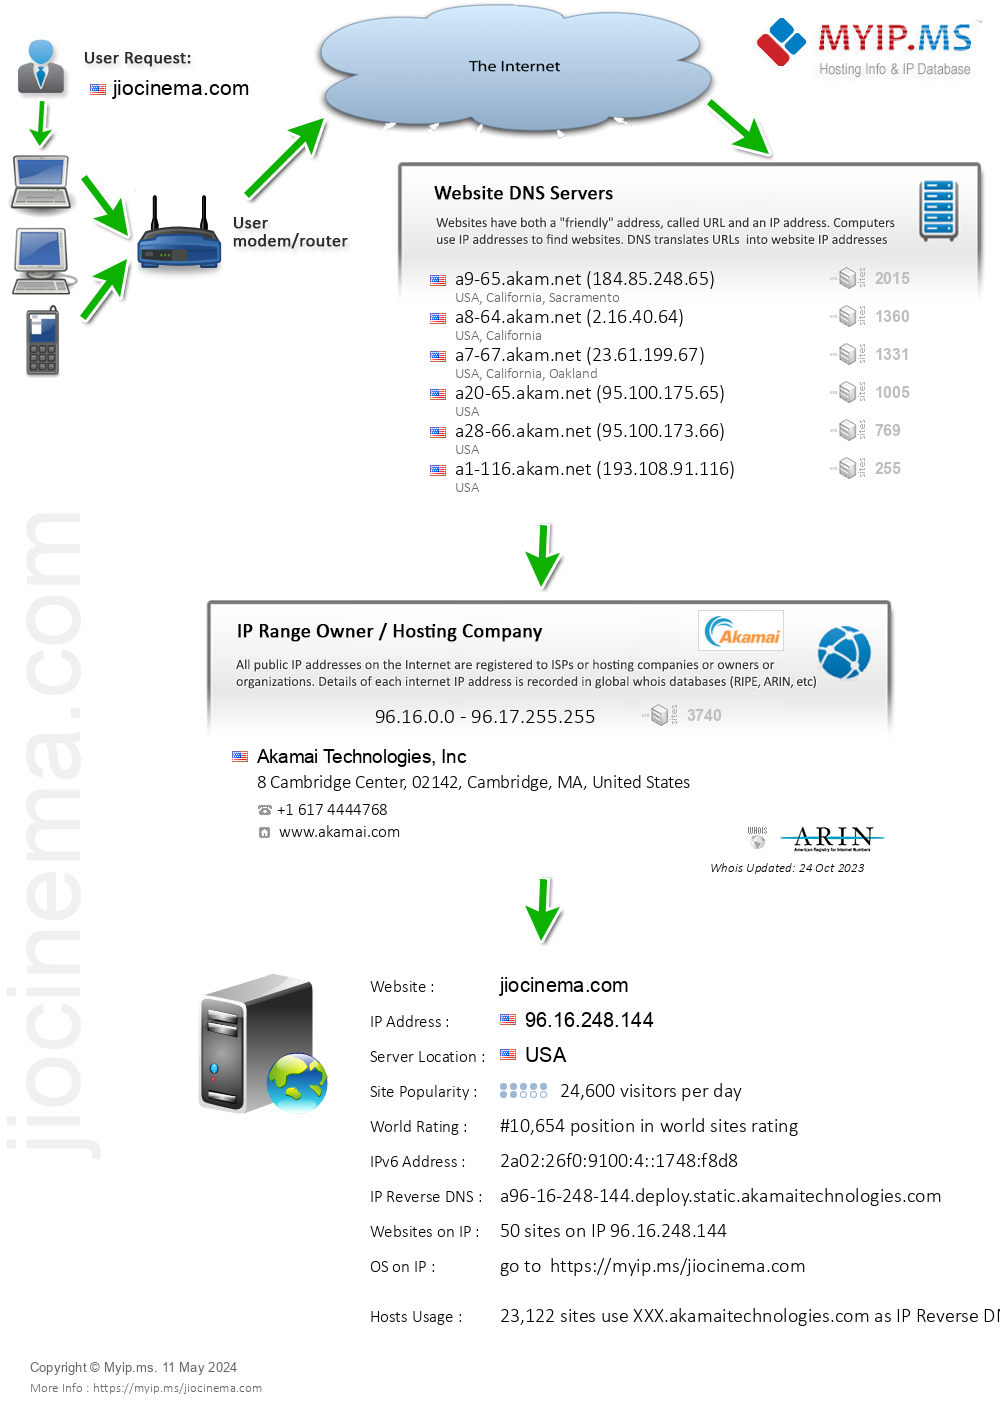 Jiocinema.com - Website Hosting Visual IP Diagram